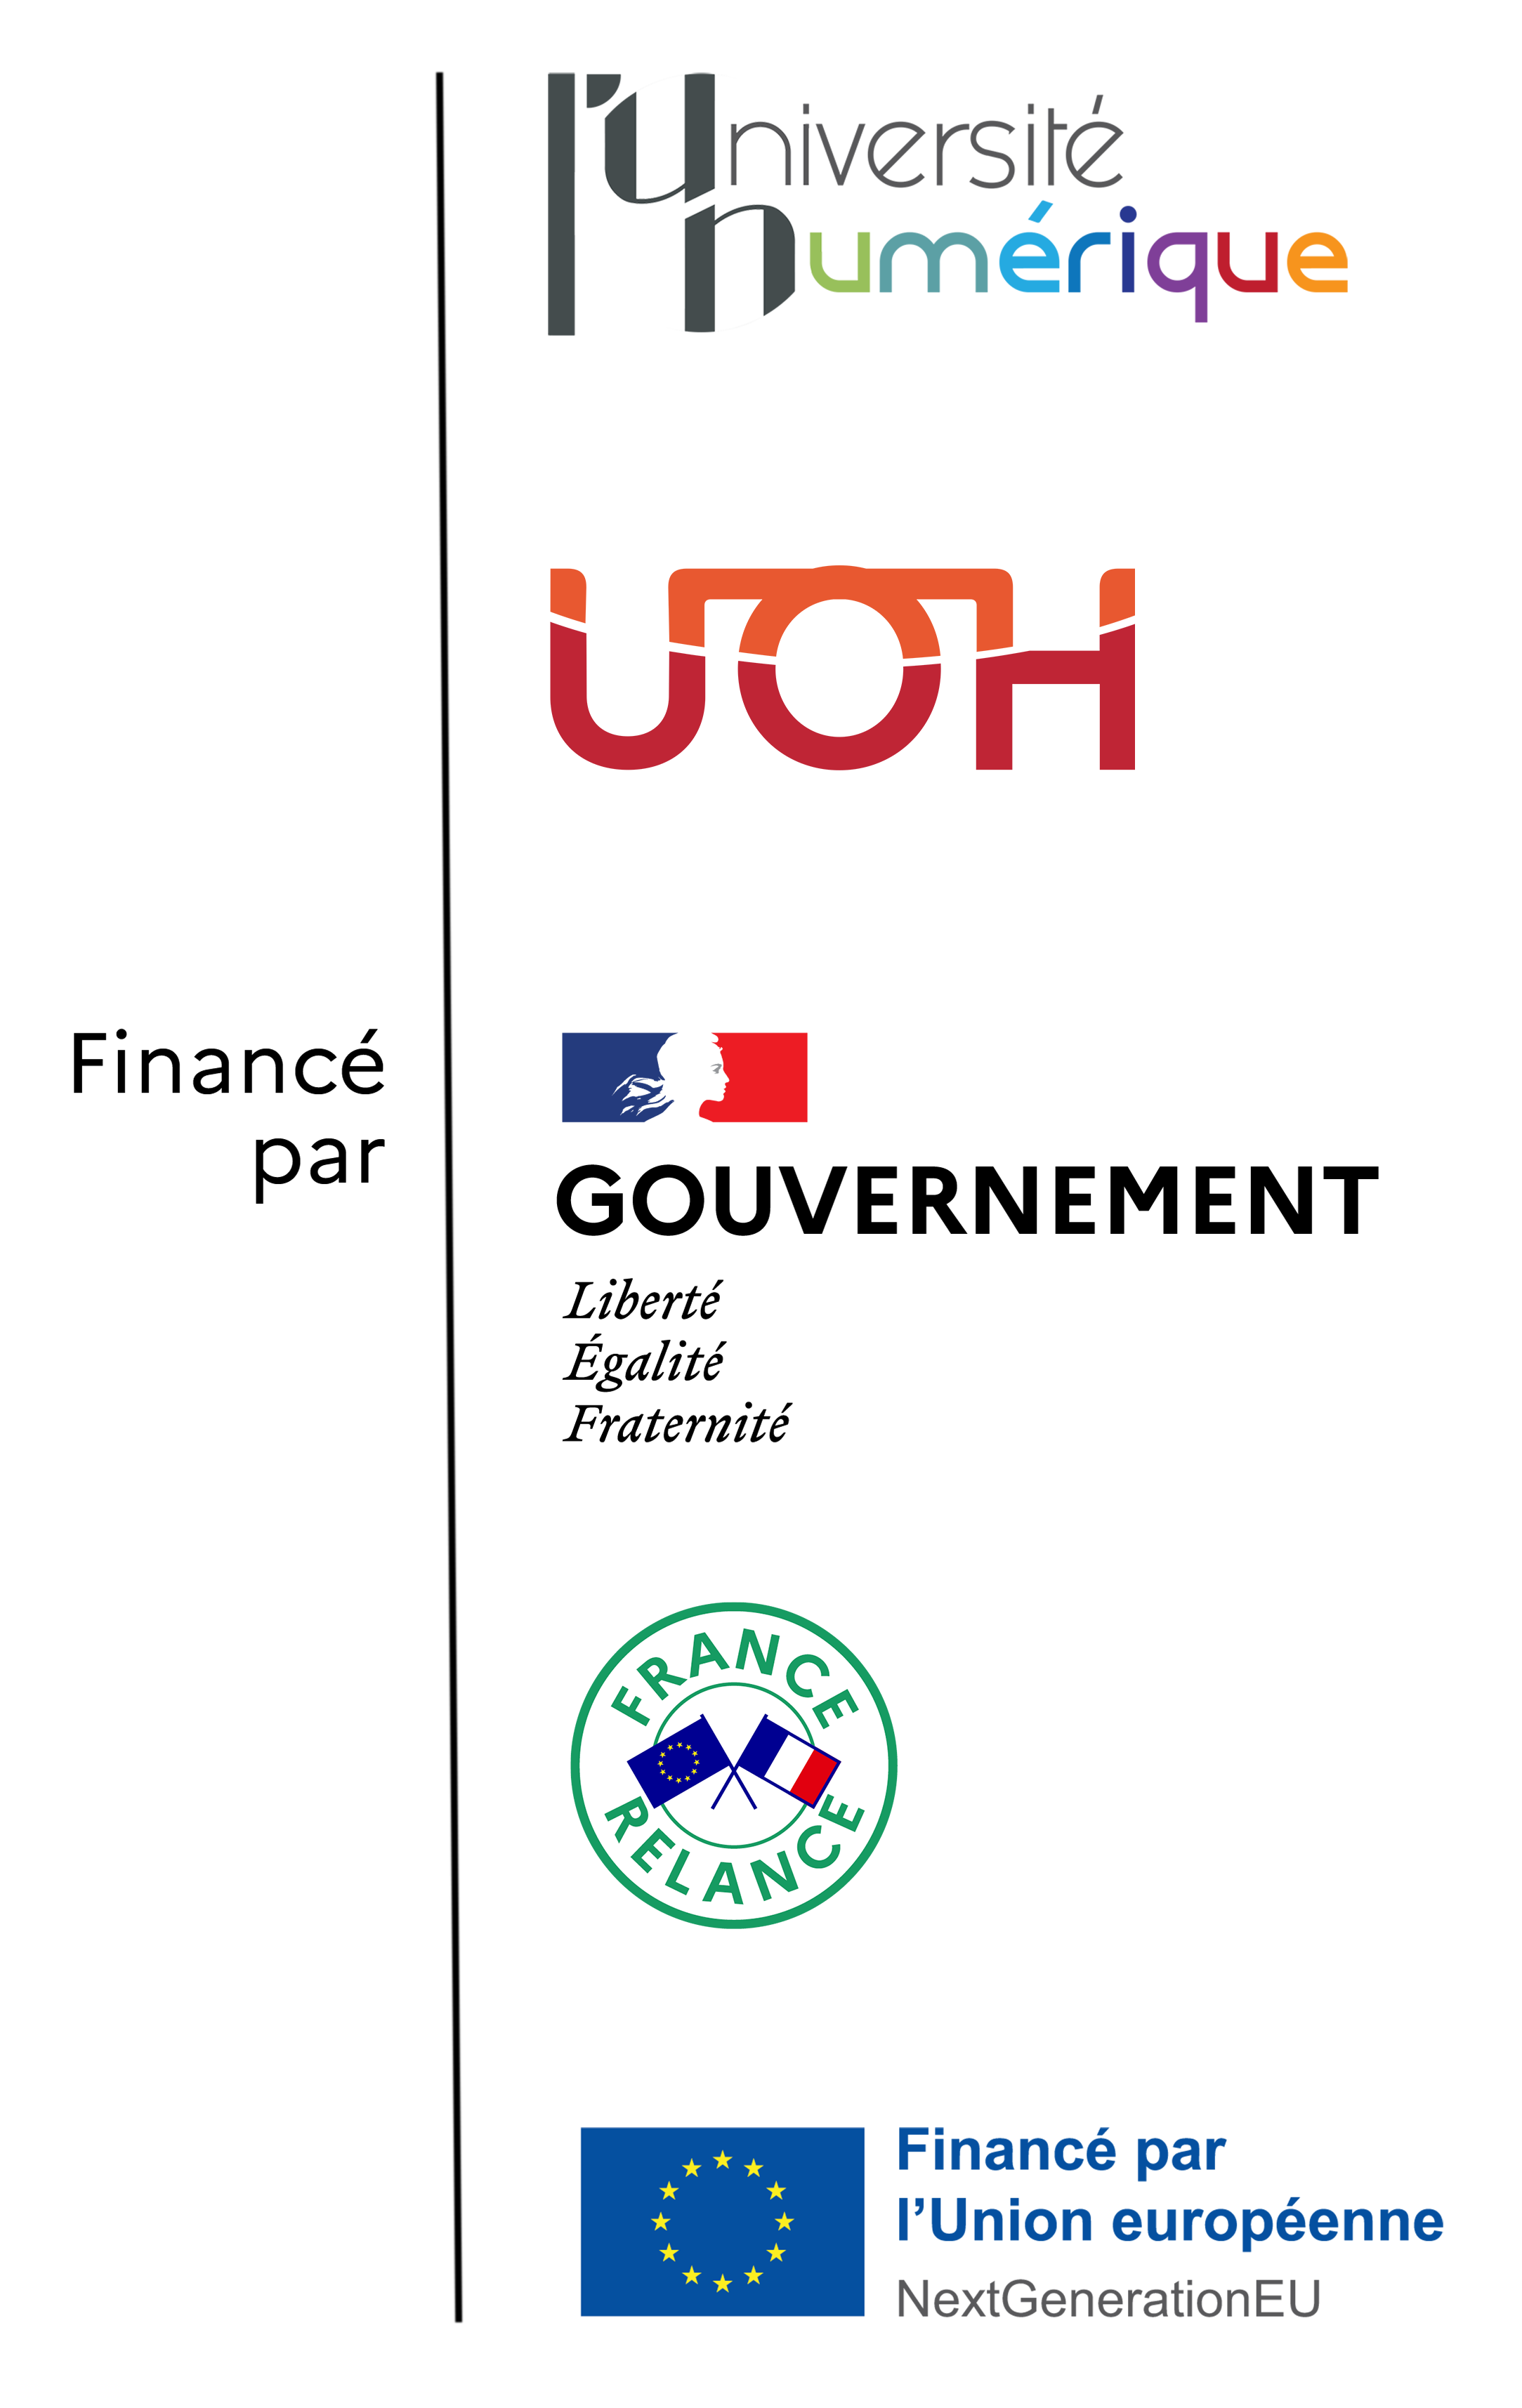 Logos of France Relance, Government of France, L'Université Numérique, Fondation UNIT, European Union